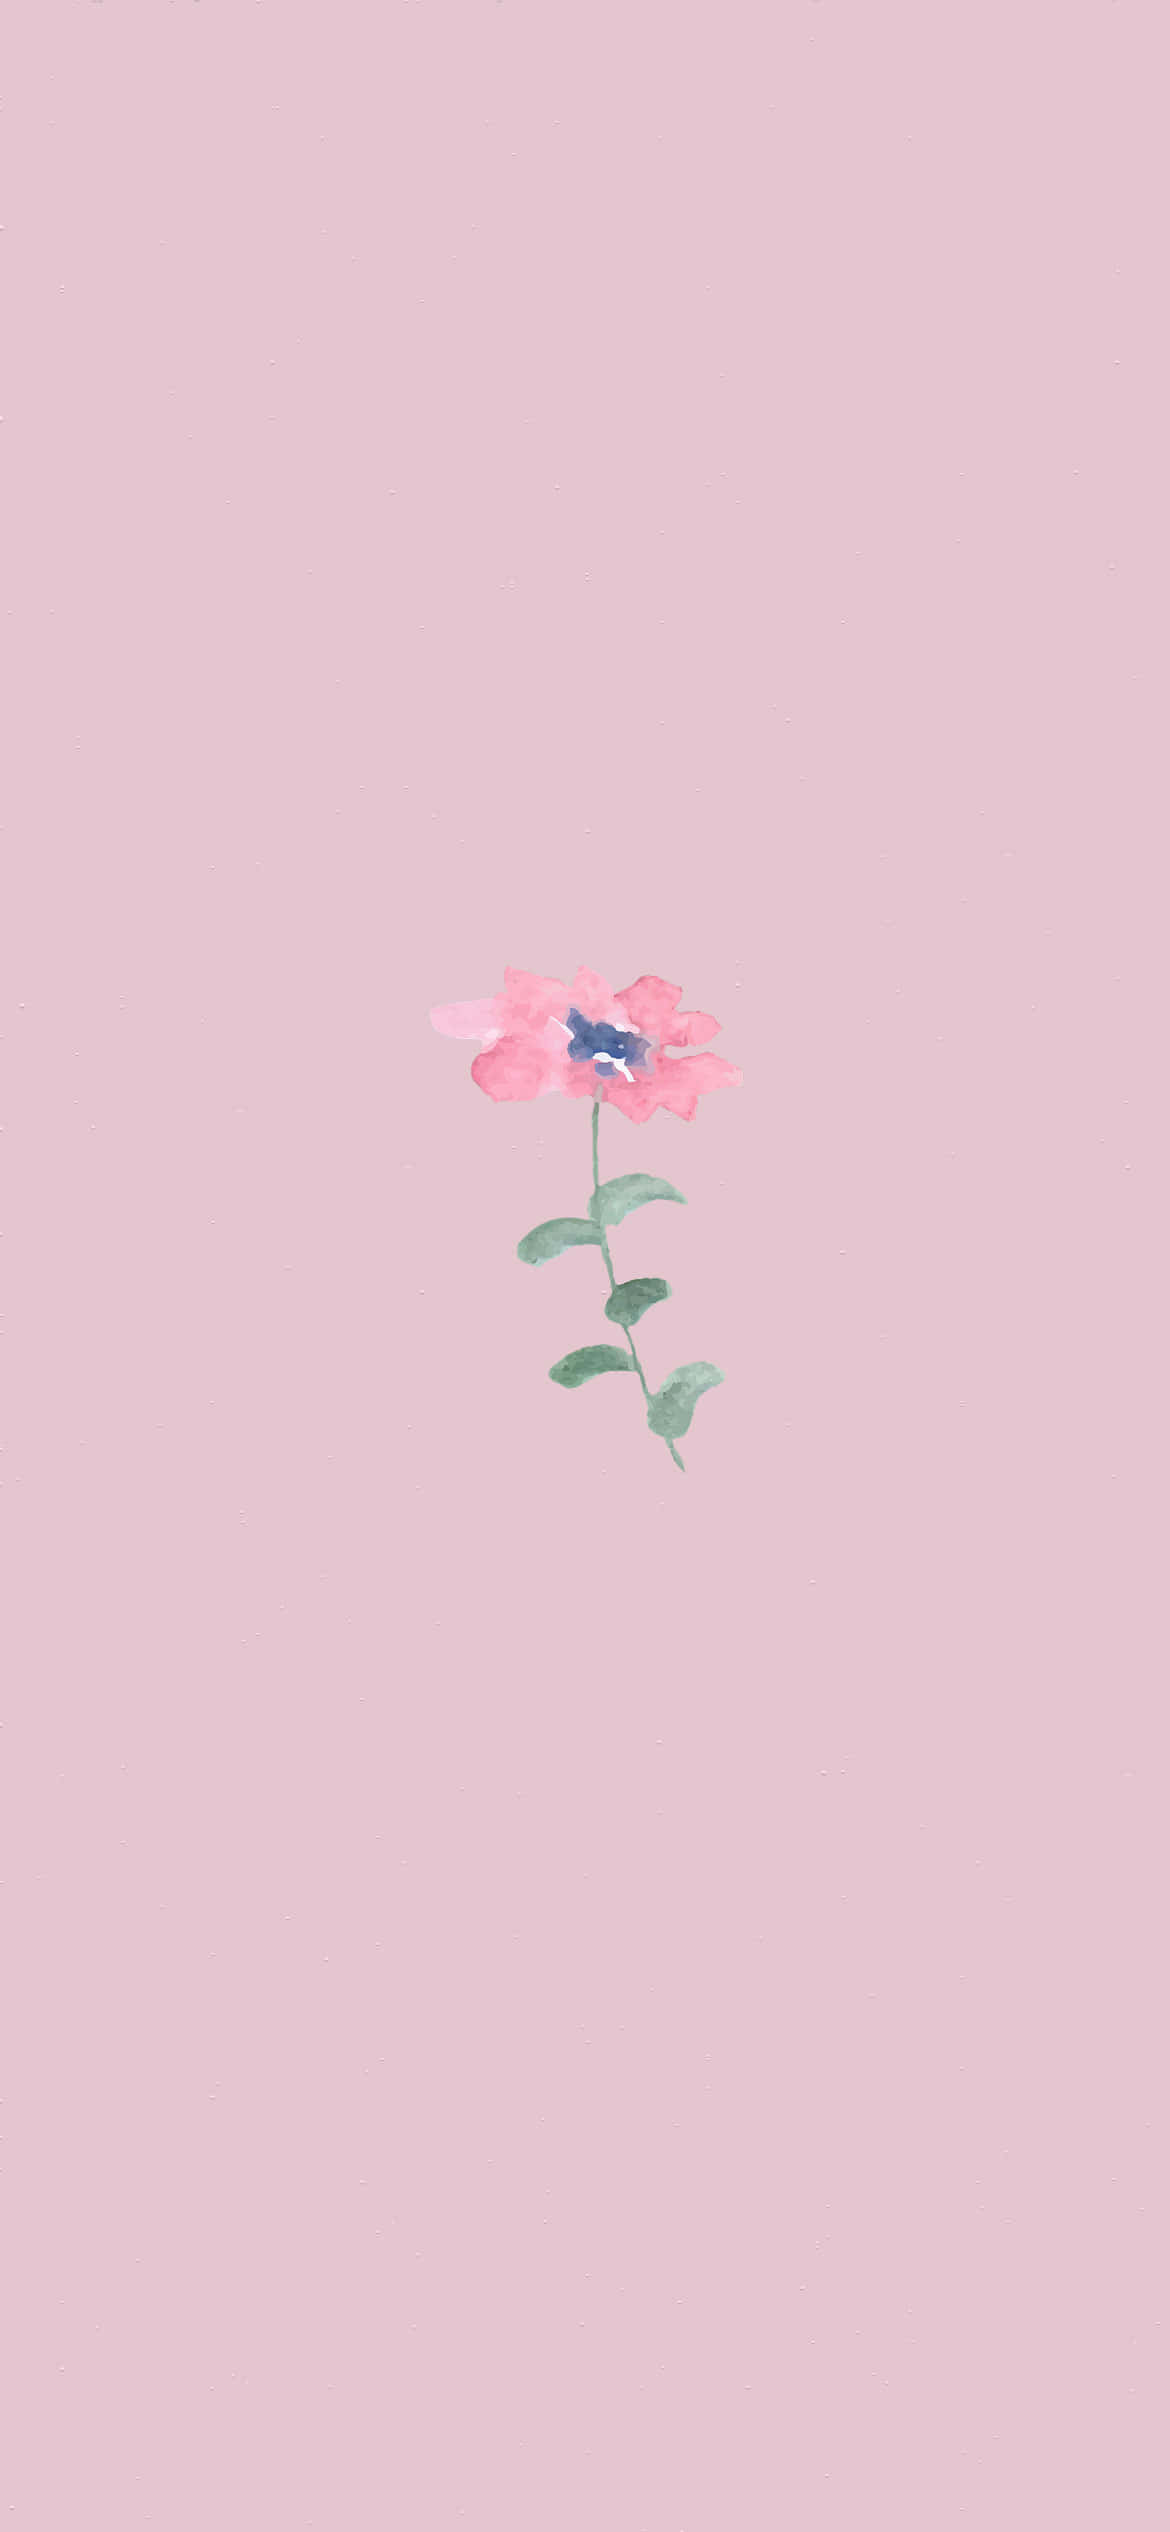 Enpink Blomst På En Pink Baggrund.